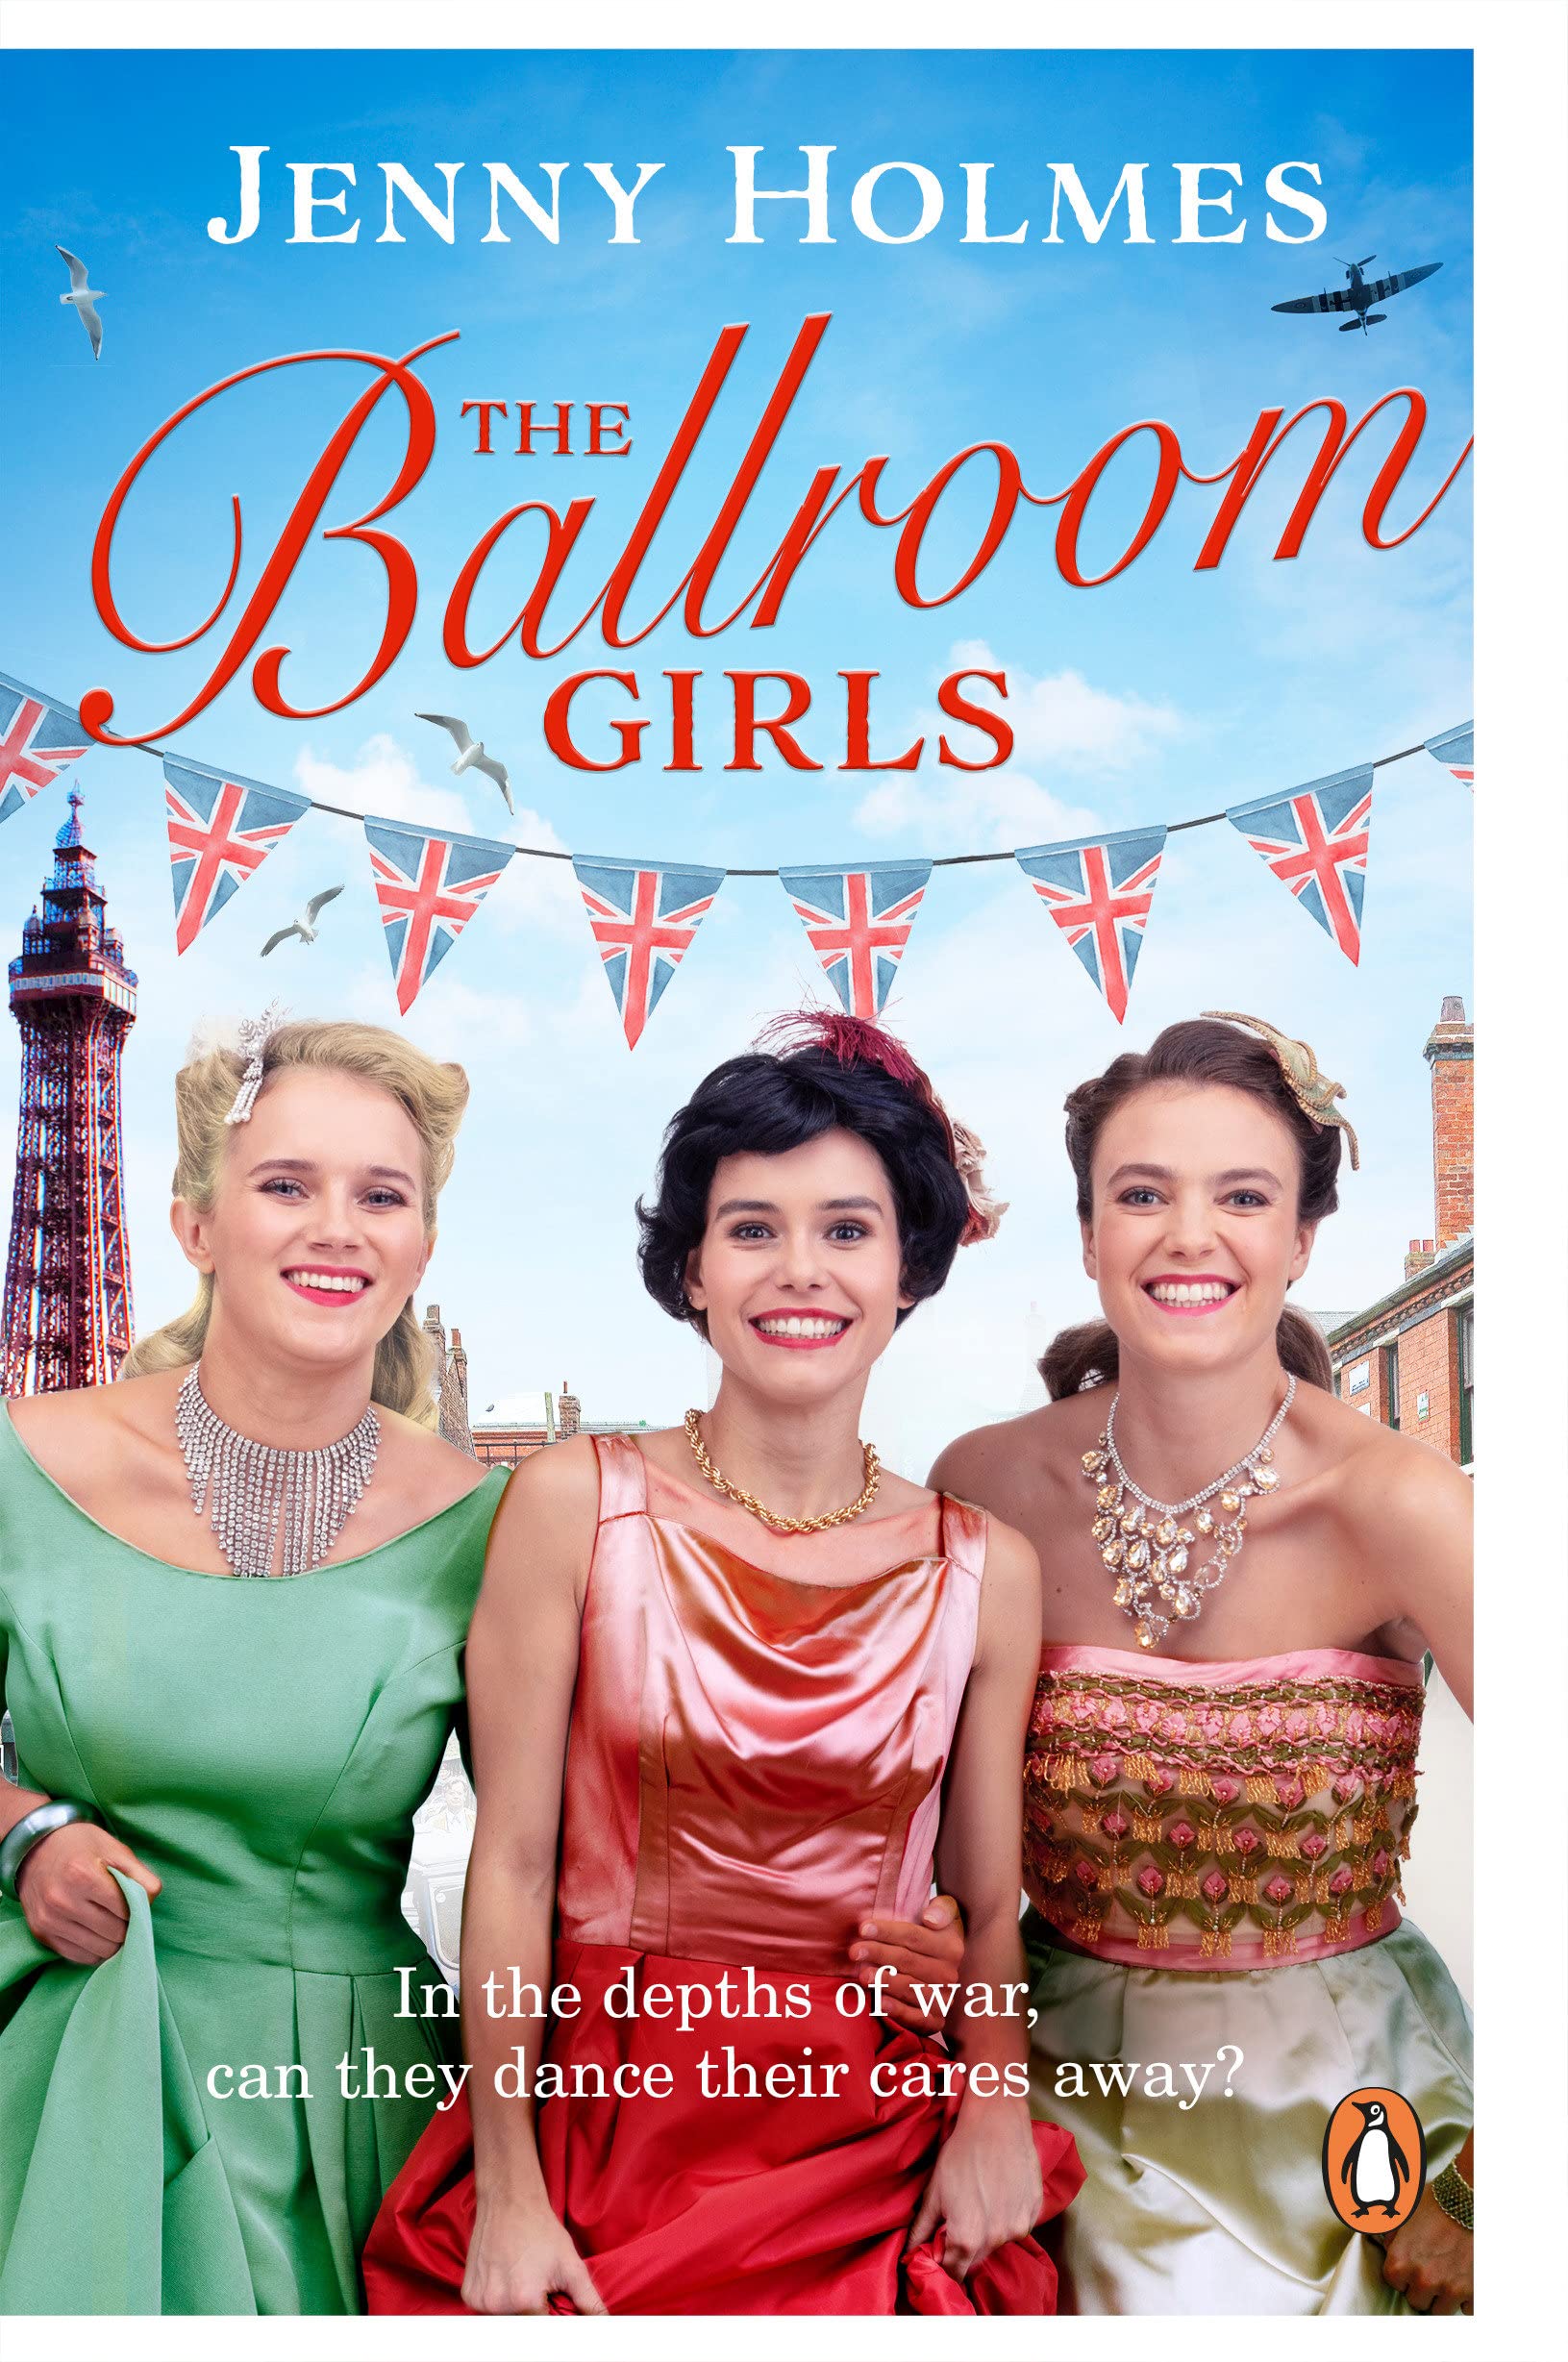 Ballroom girls book